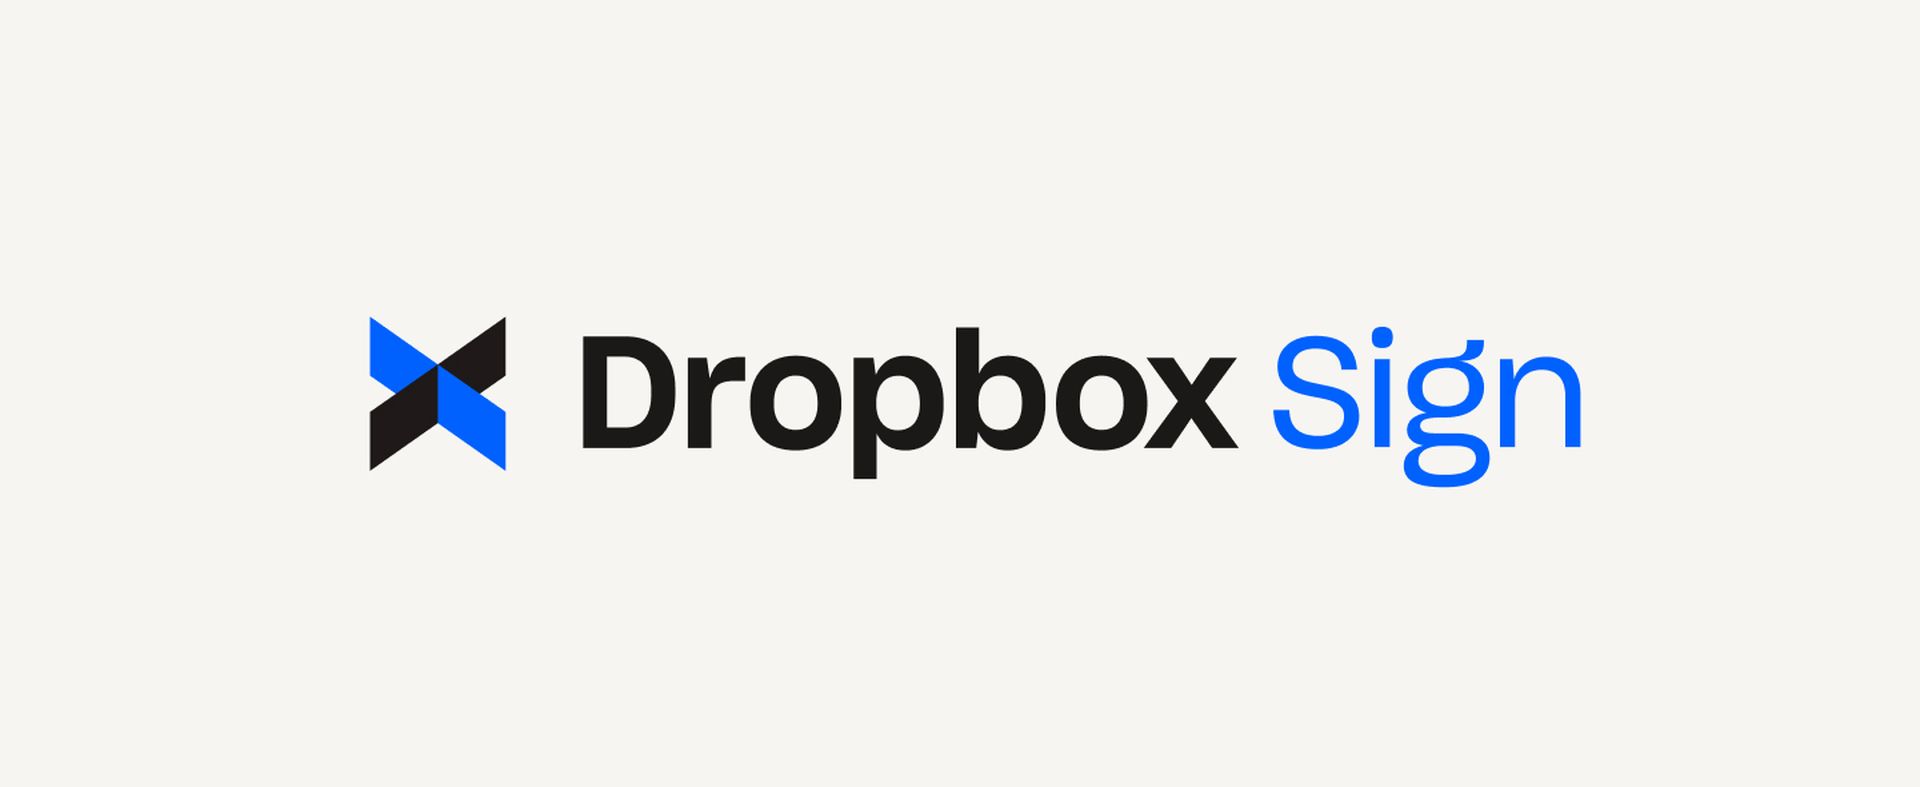 El ataque a Dropbox Sign: una inmersión profunda en la seguridad de los datos y sus implicaciones